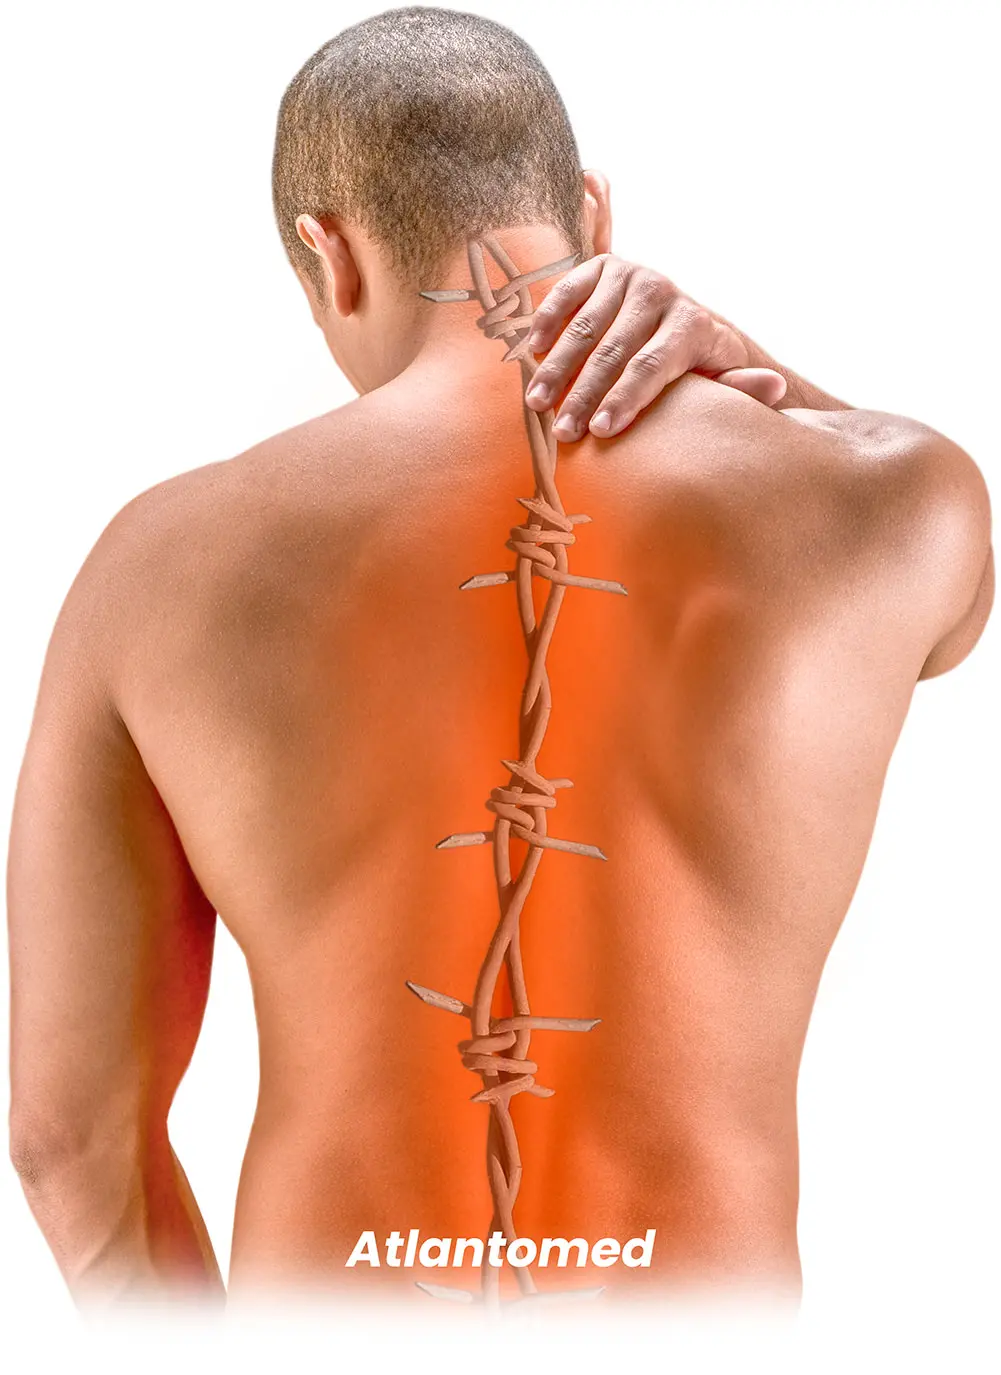 Uomo con mal di schiena e contratture muscolari